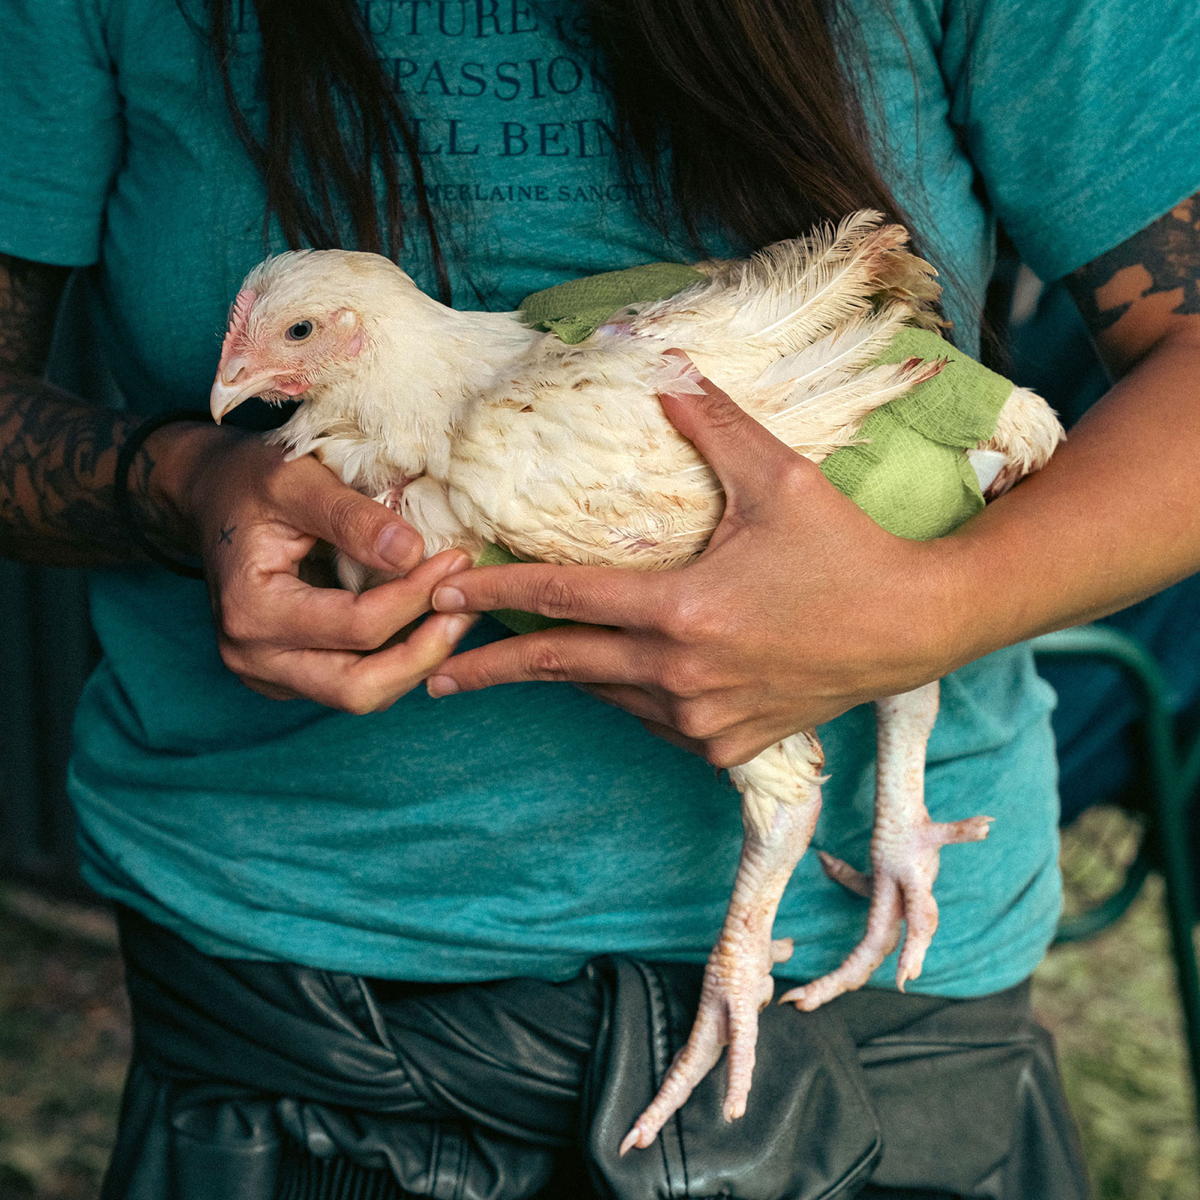 Bandaged chicken carefully held